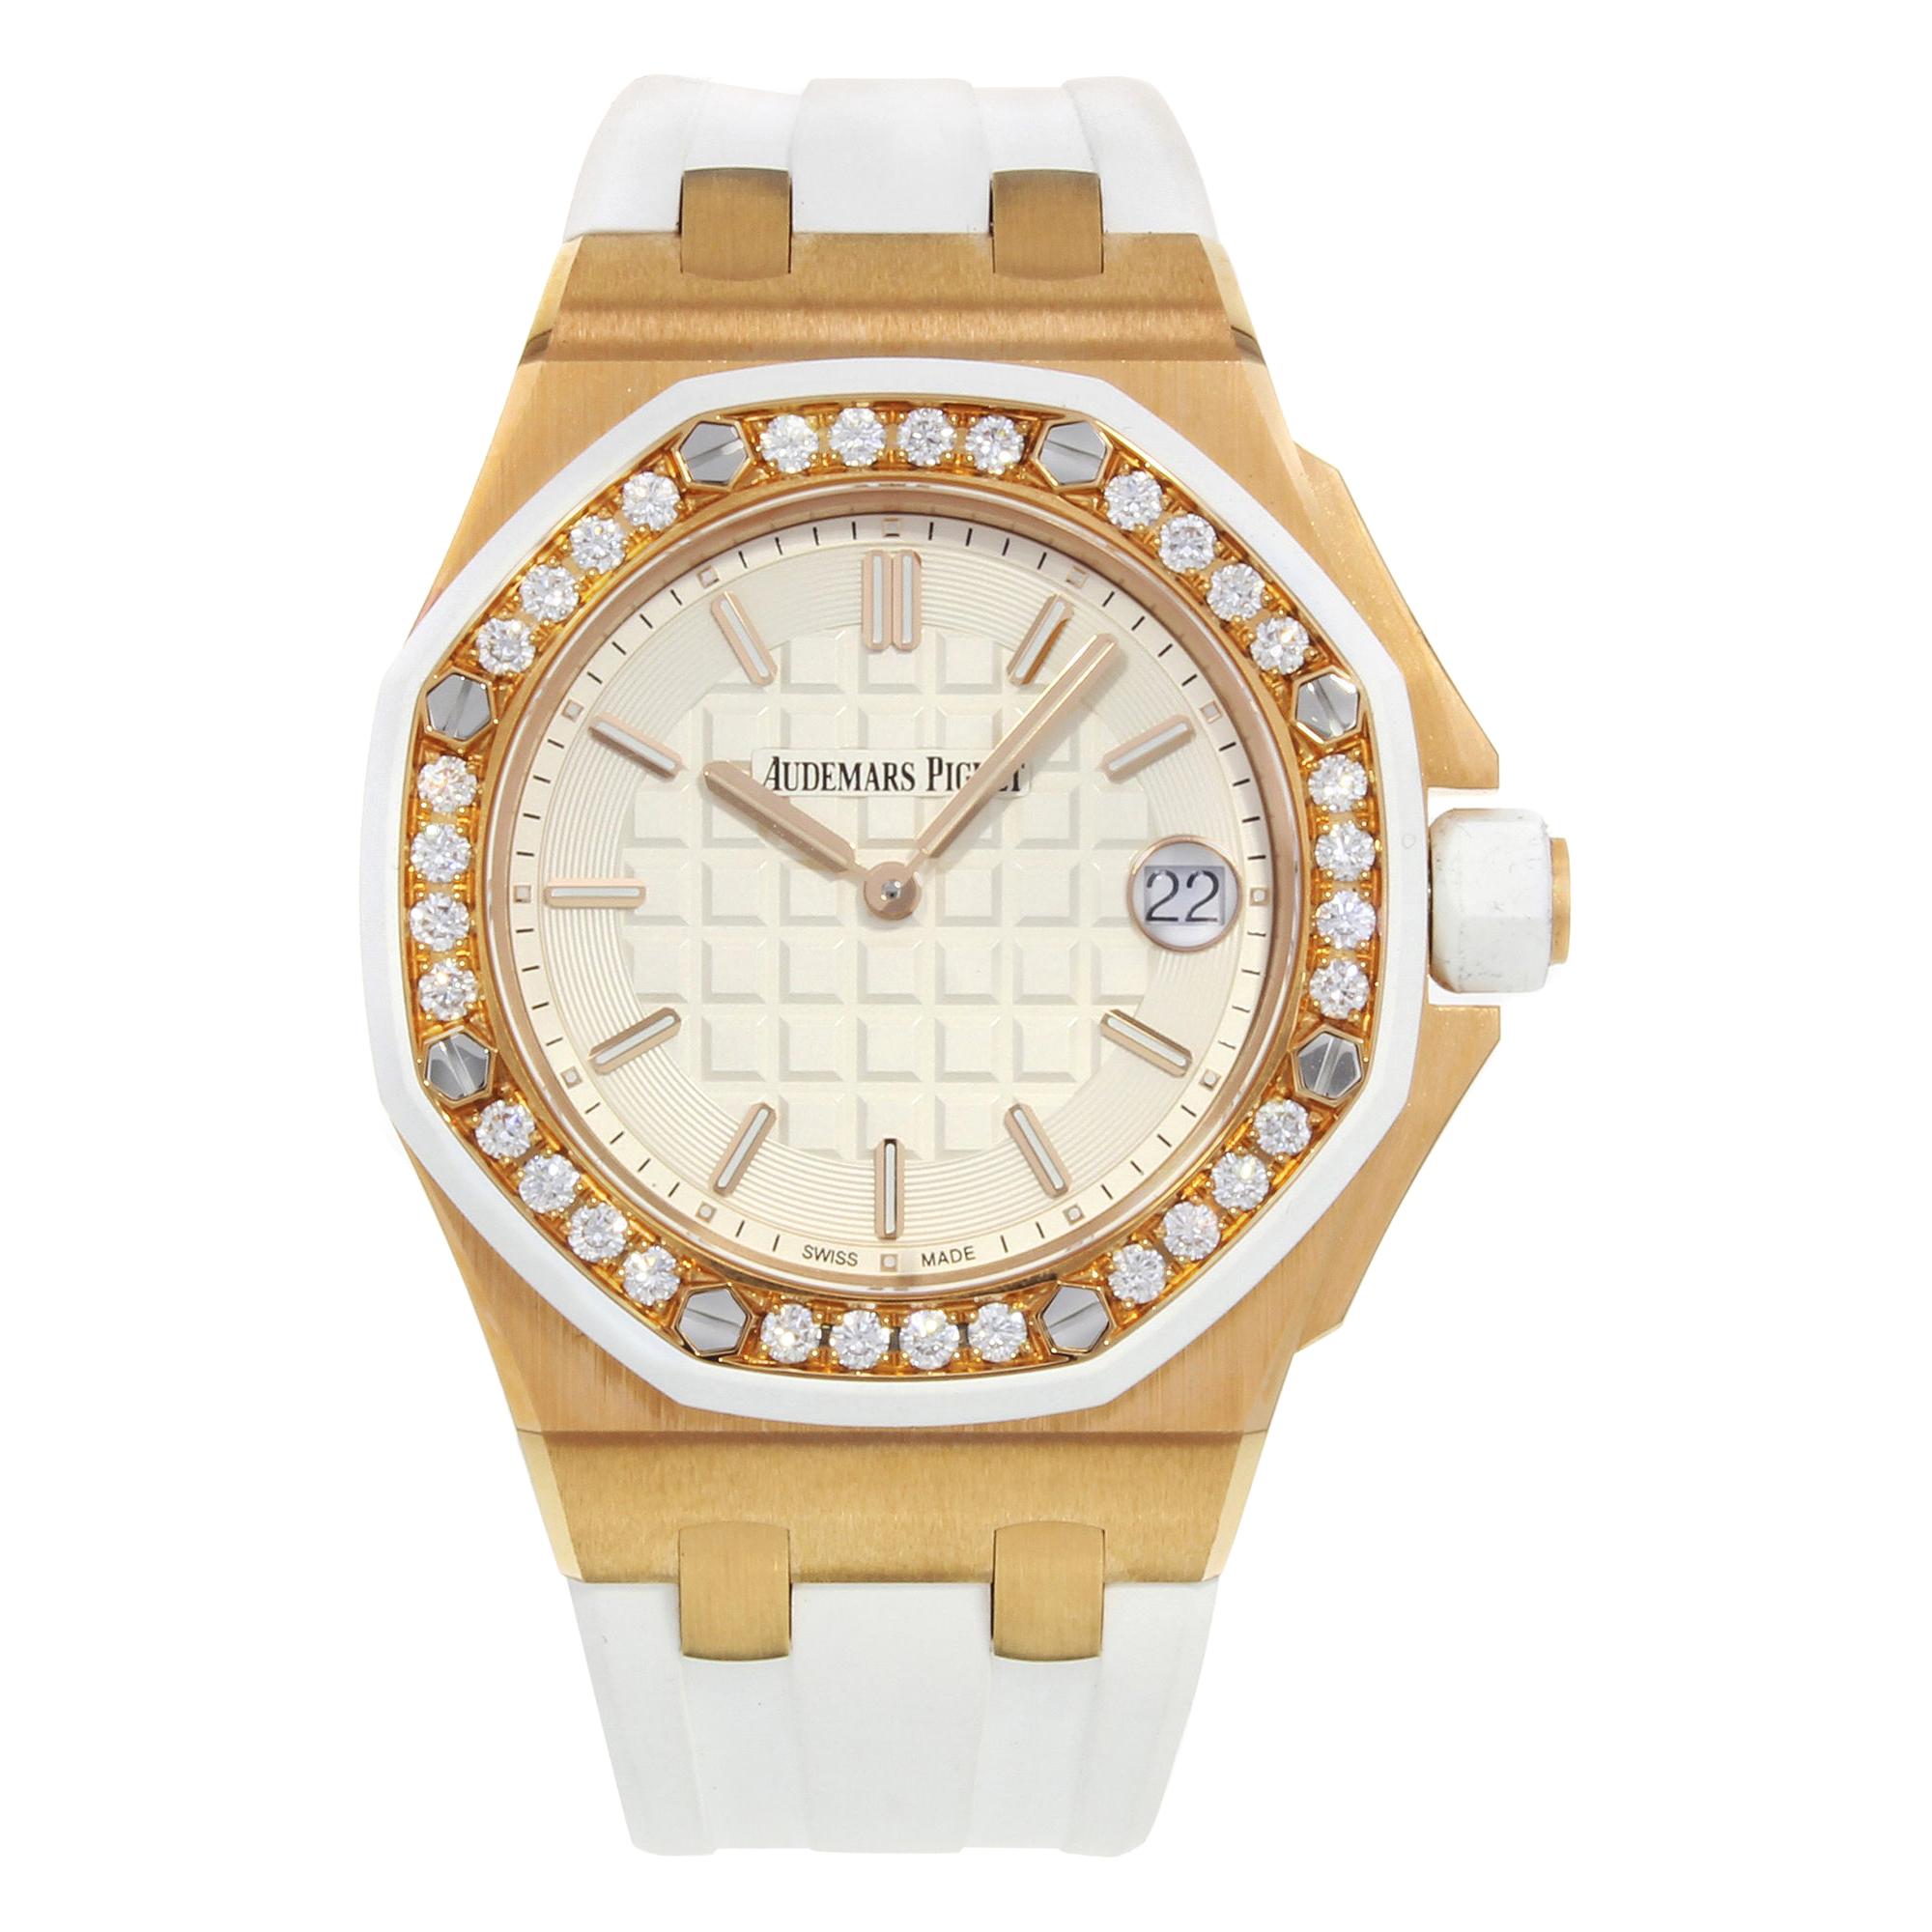 Audemars Piguet Royal Oak Offshore 67540ok. zz. a010ca. 01 18 Karat Gold Watch